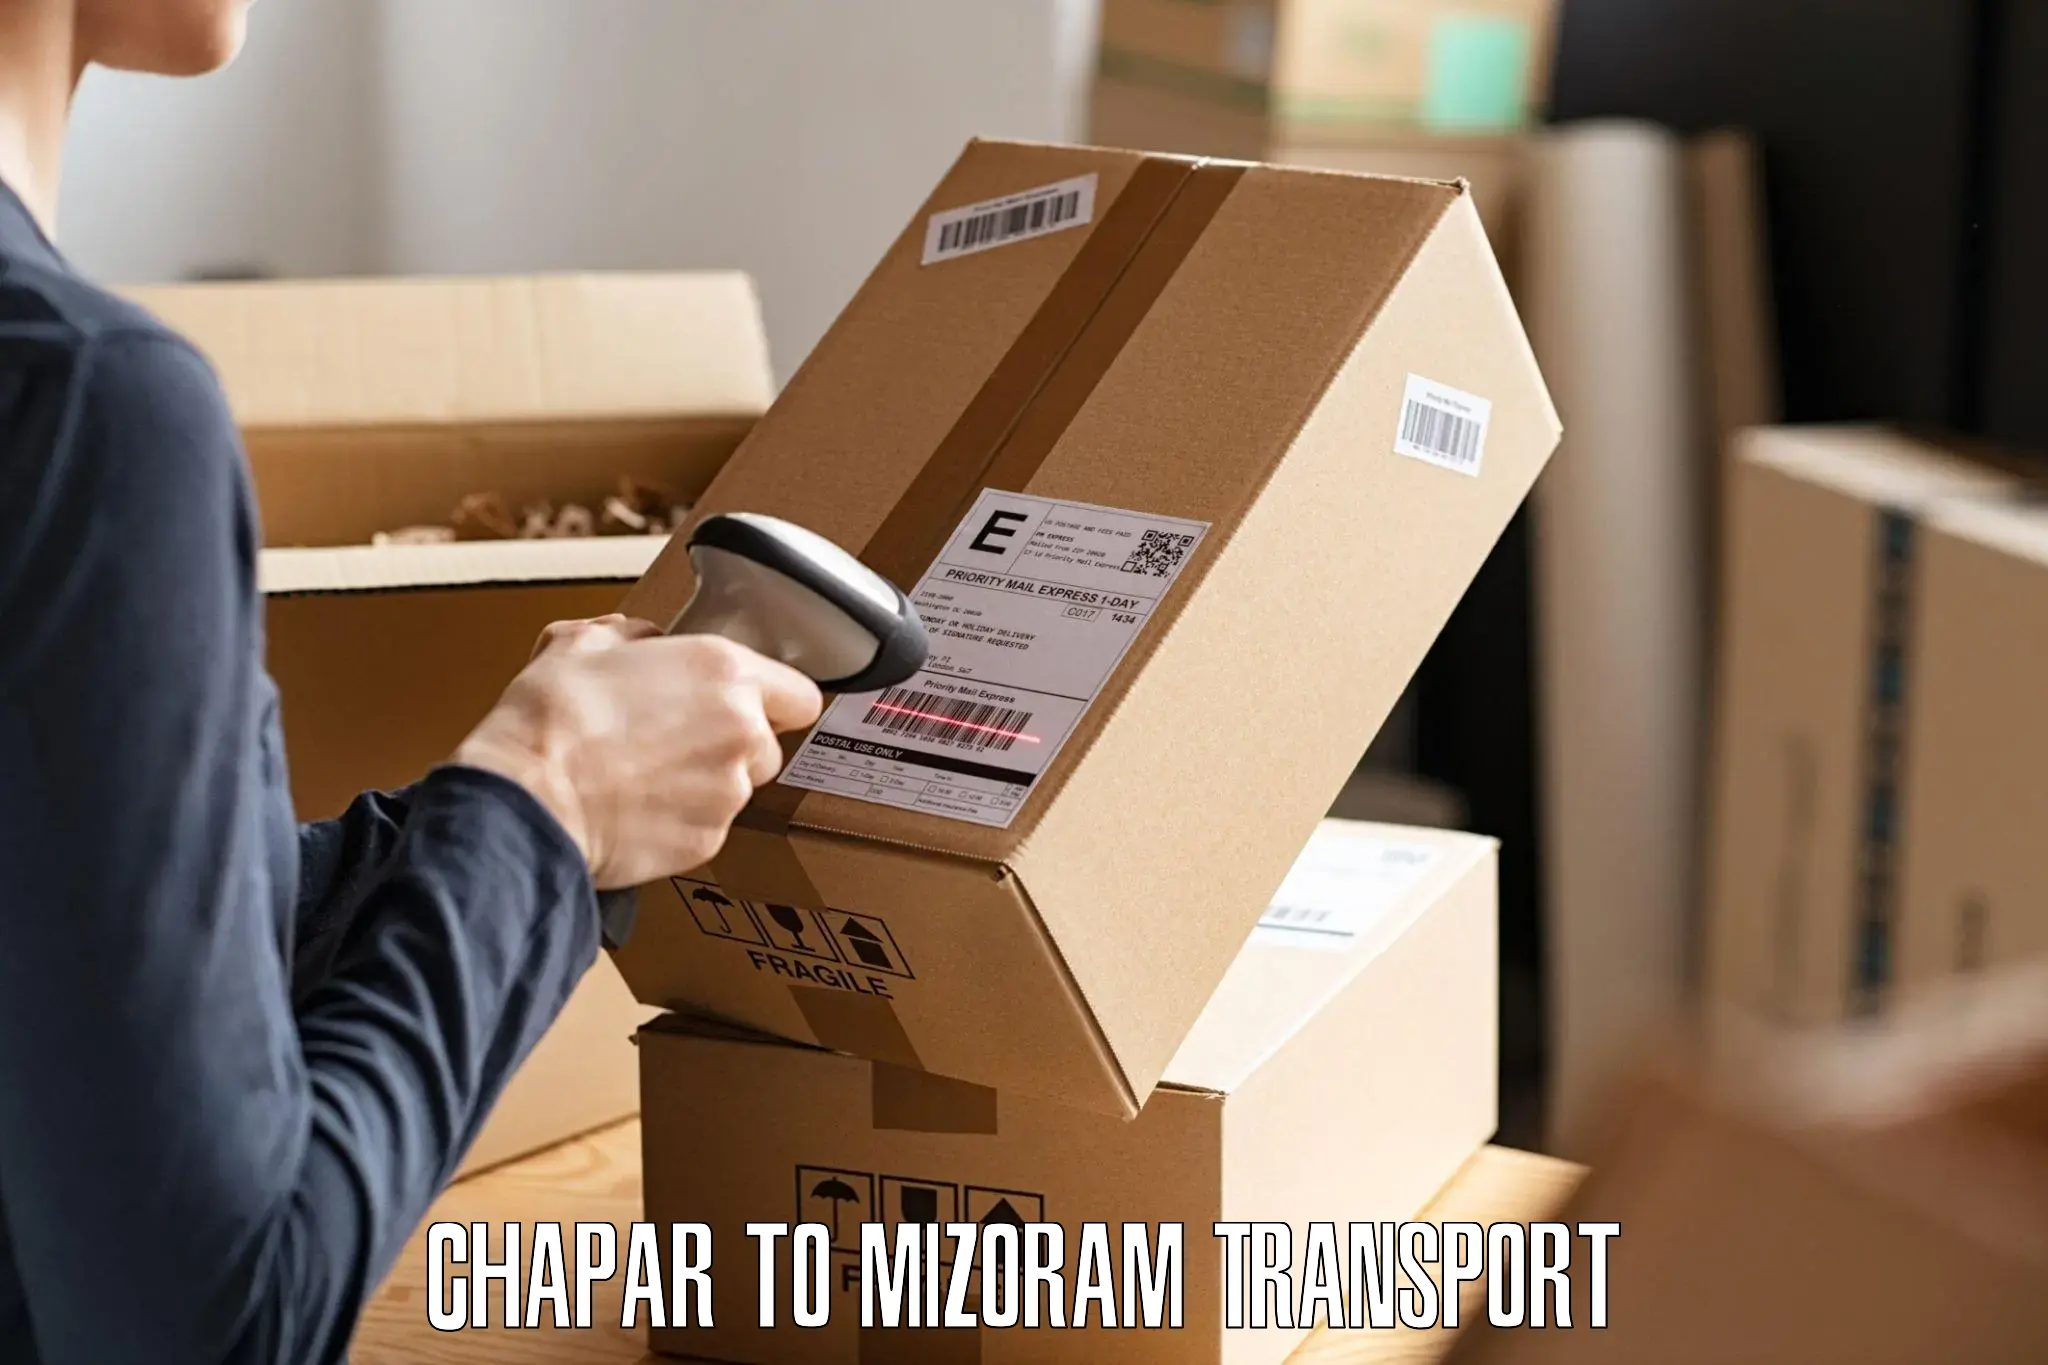 Road transport online services Chapar to Mizoram